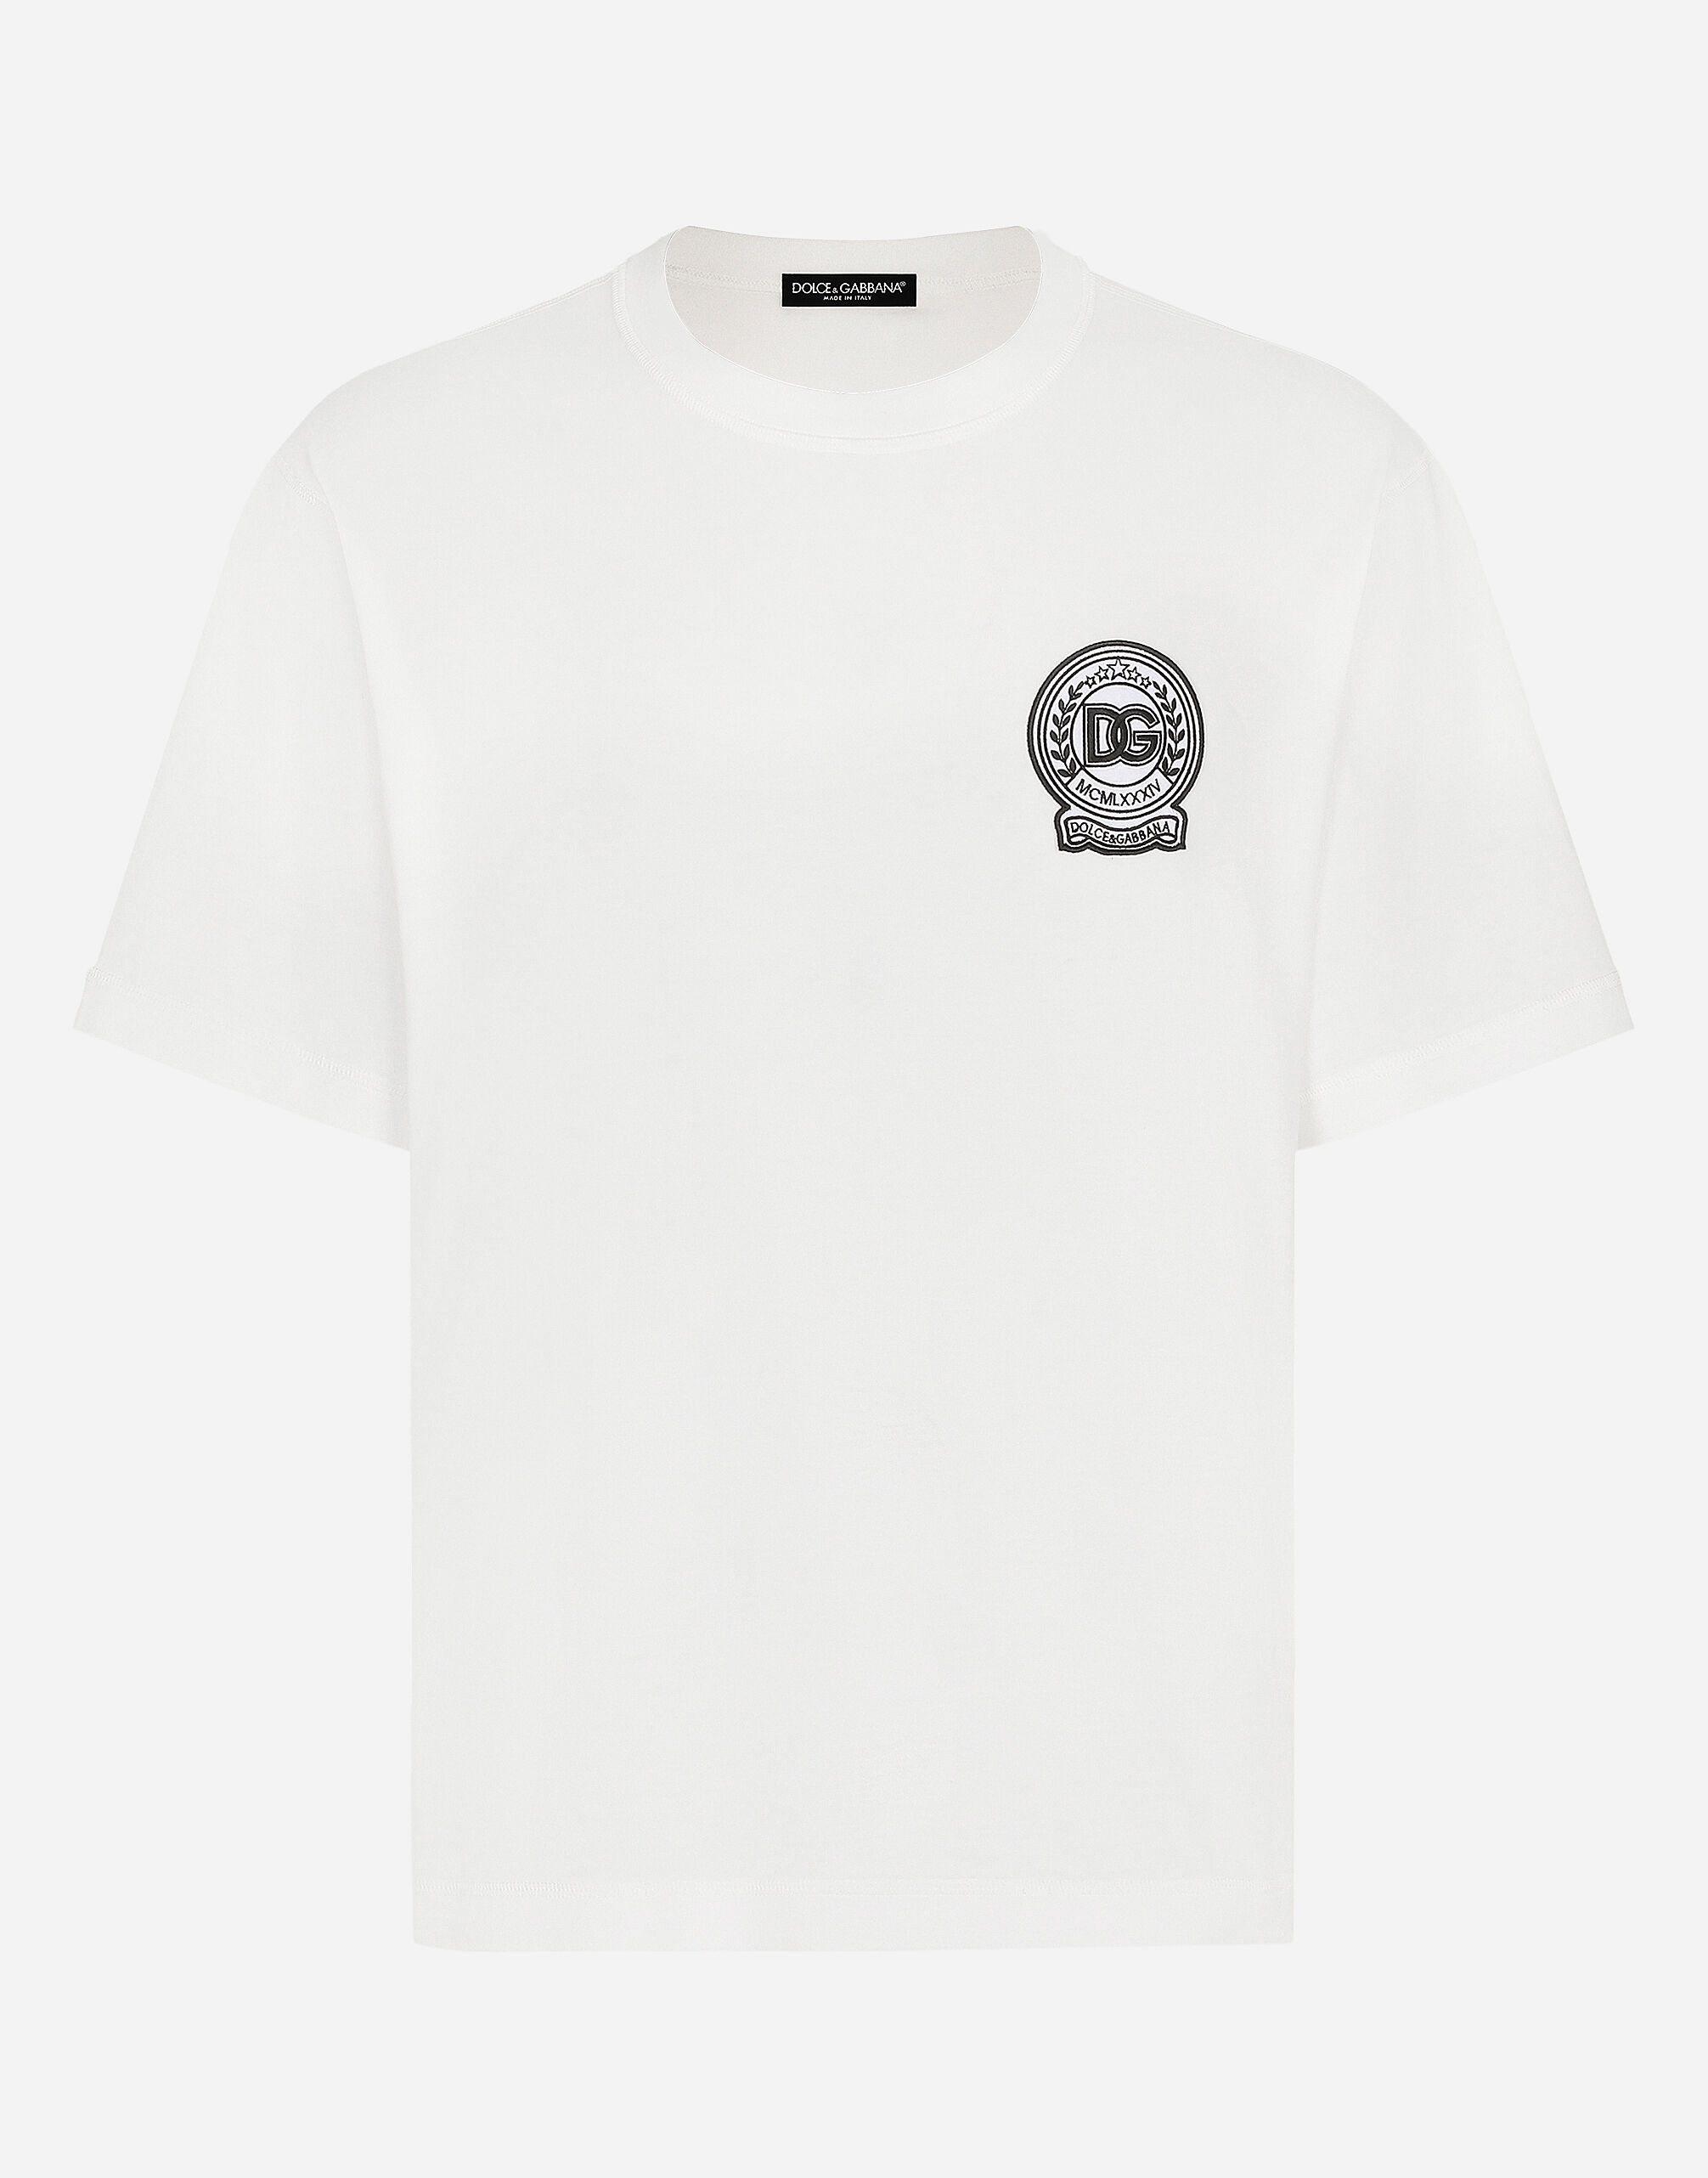 Dolce & Gabbana T-shirt in cotone con ricamo logo stampato Multicolore G8PN9TG7NPZ